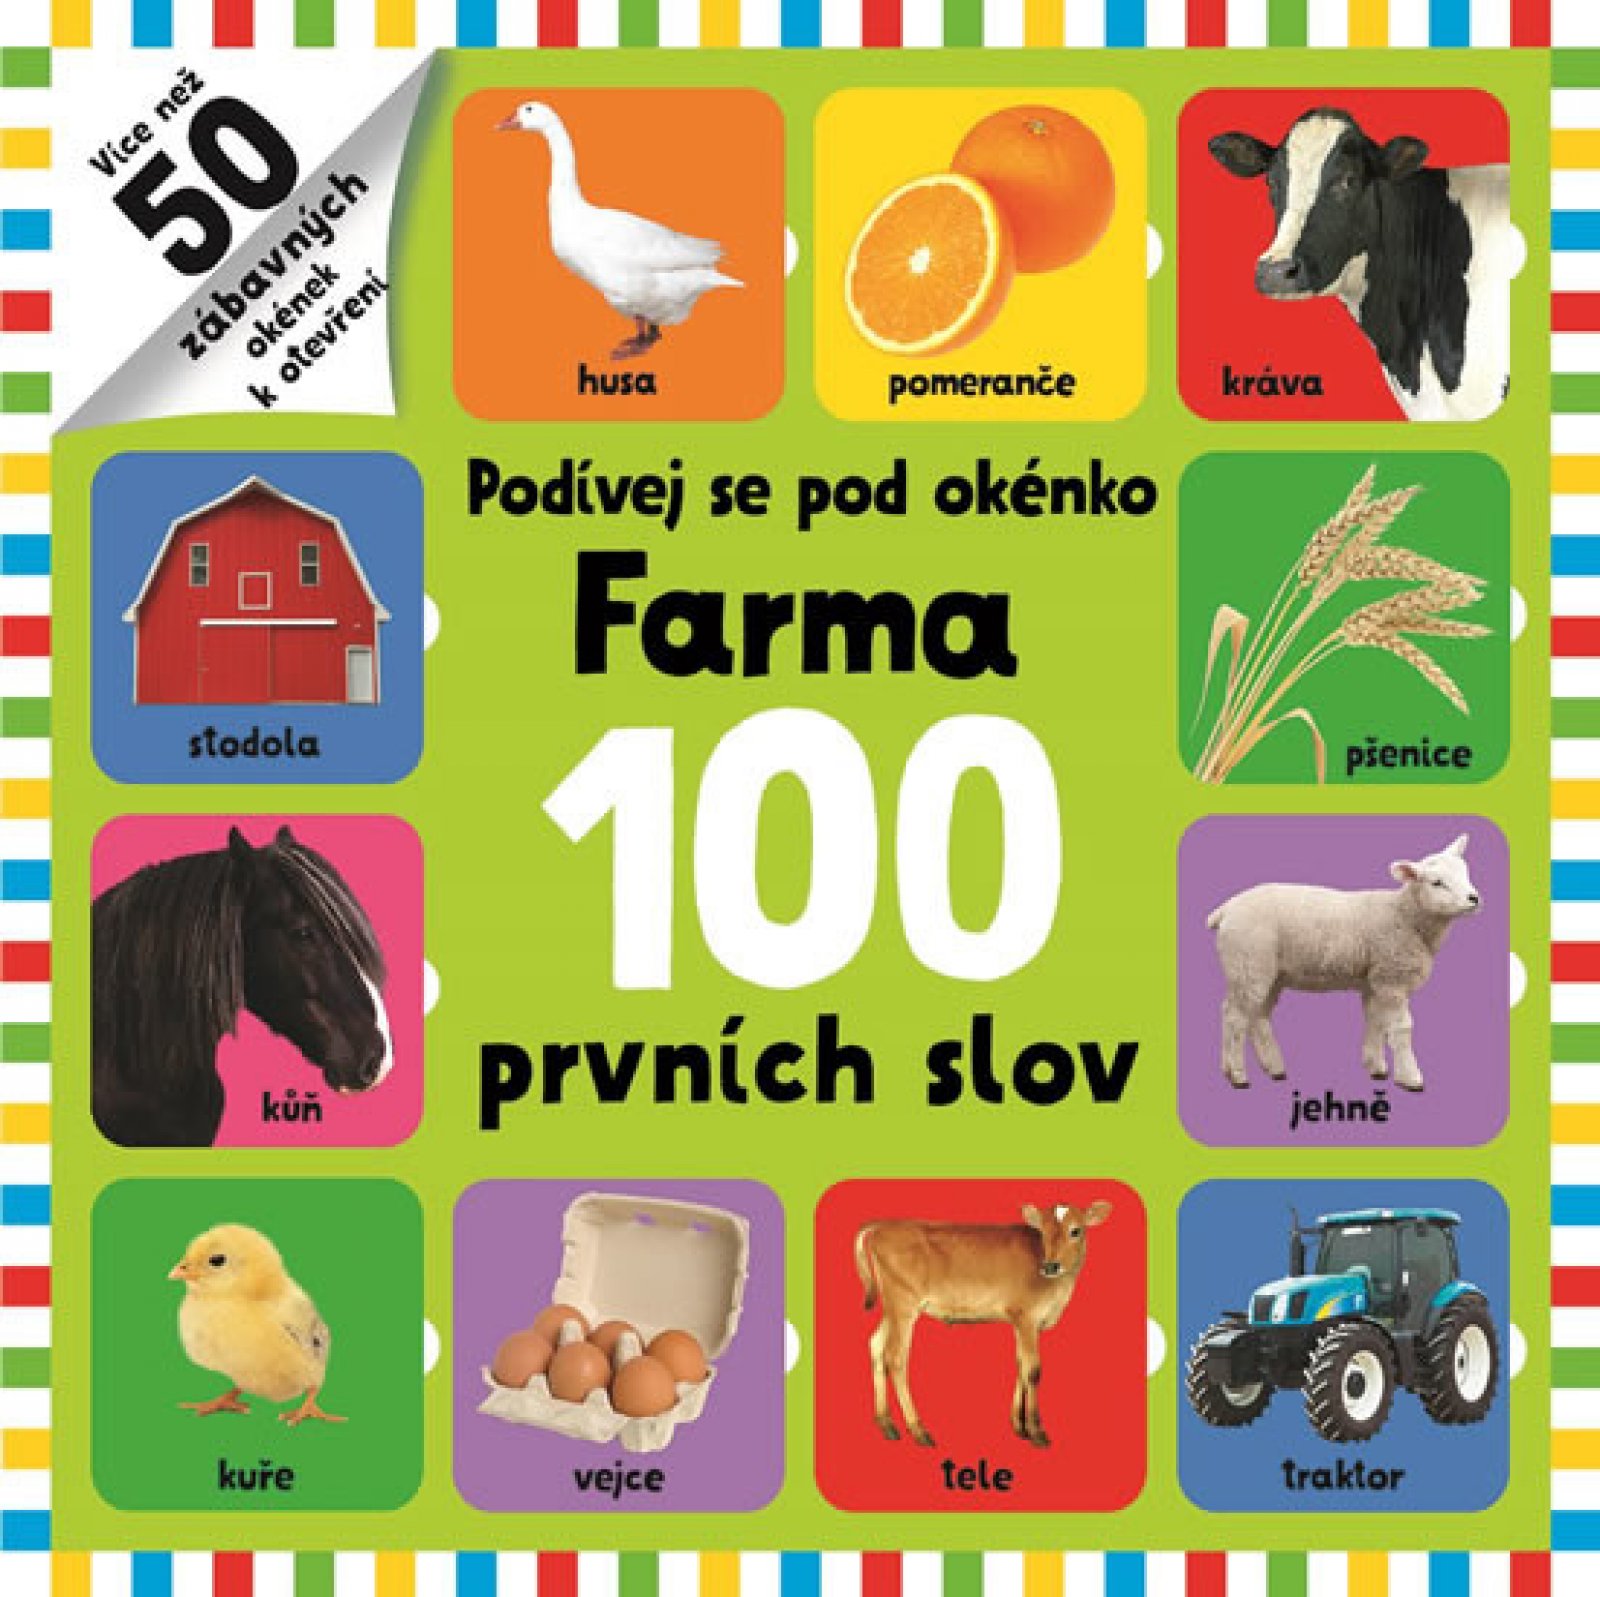 Podívej se pod okénko-Farma 100 prvních slov